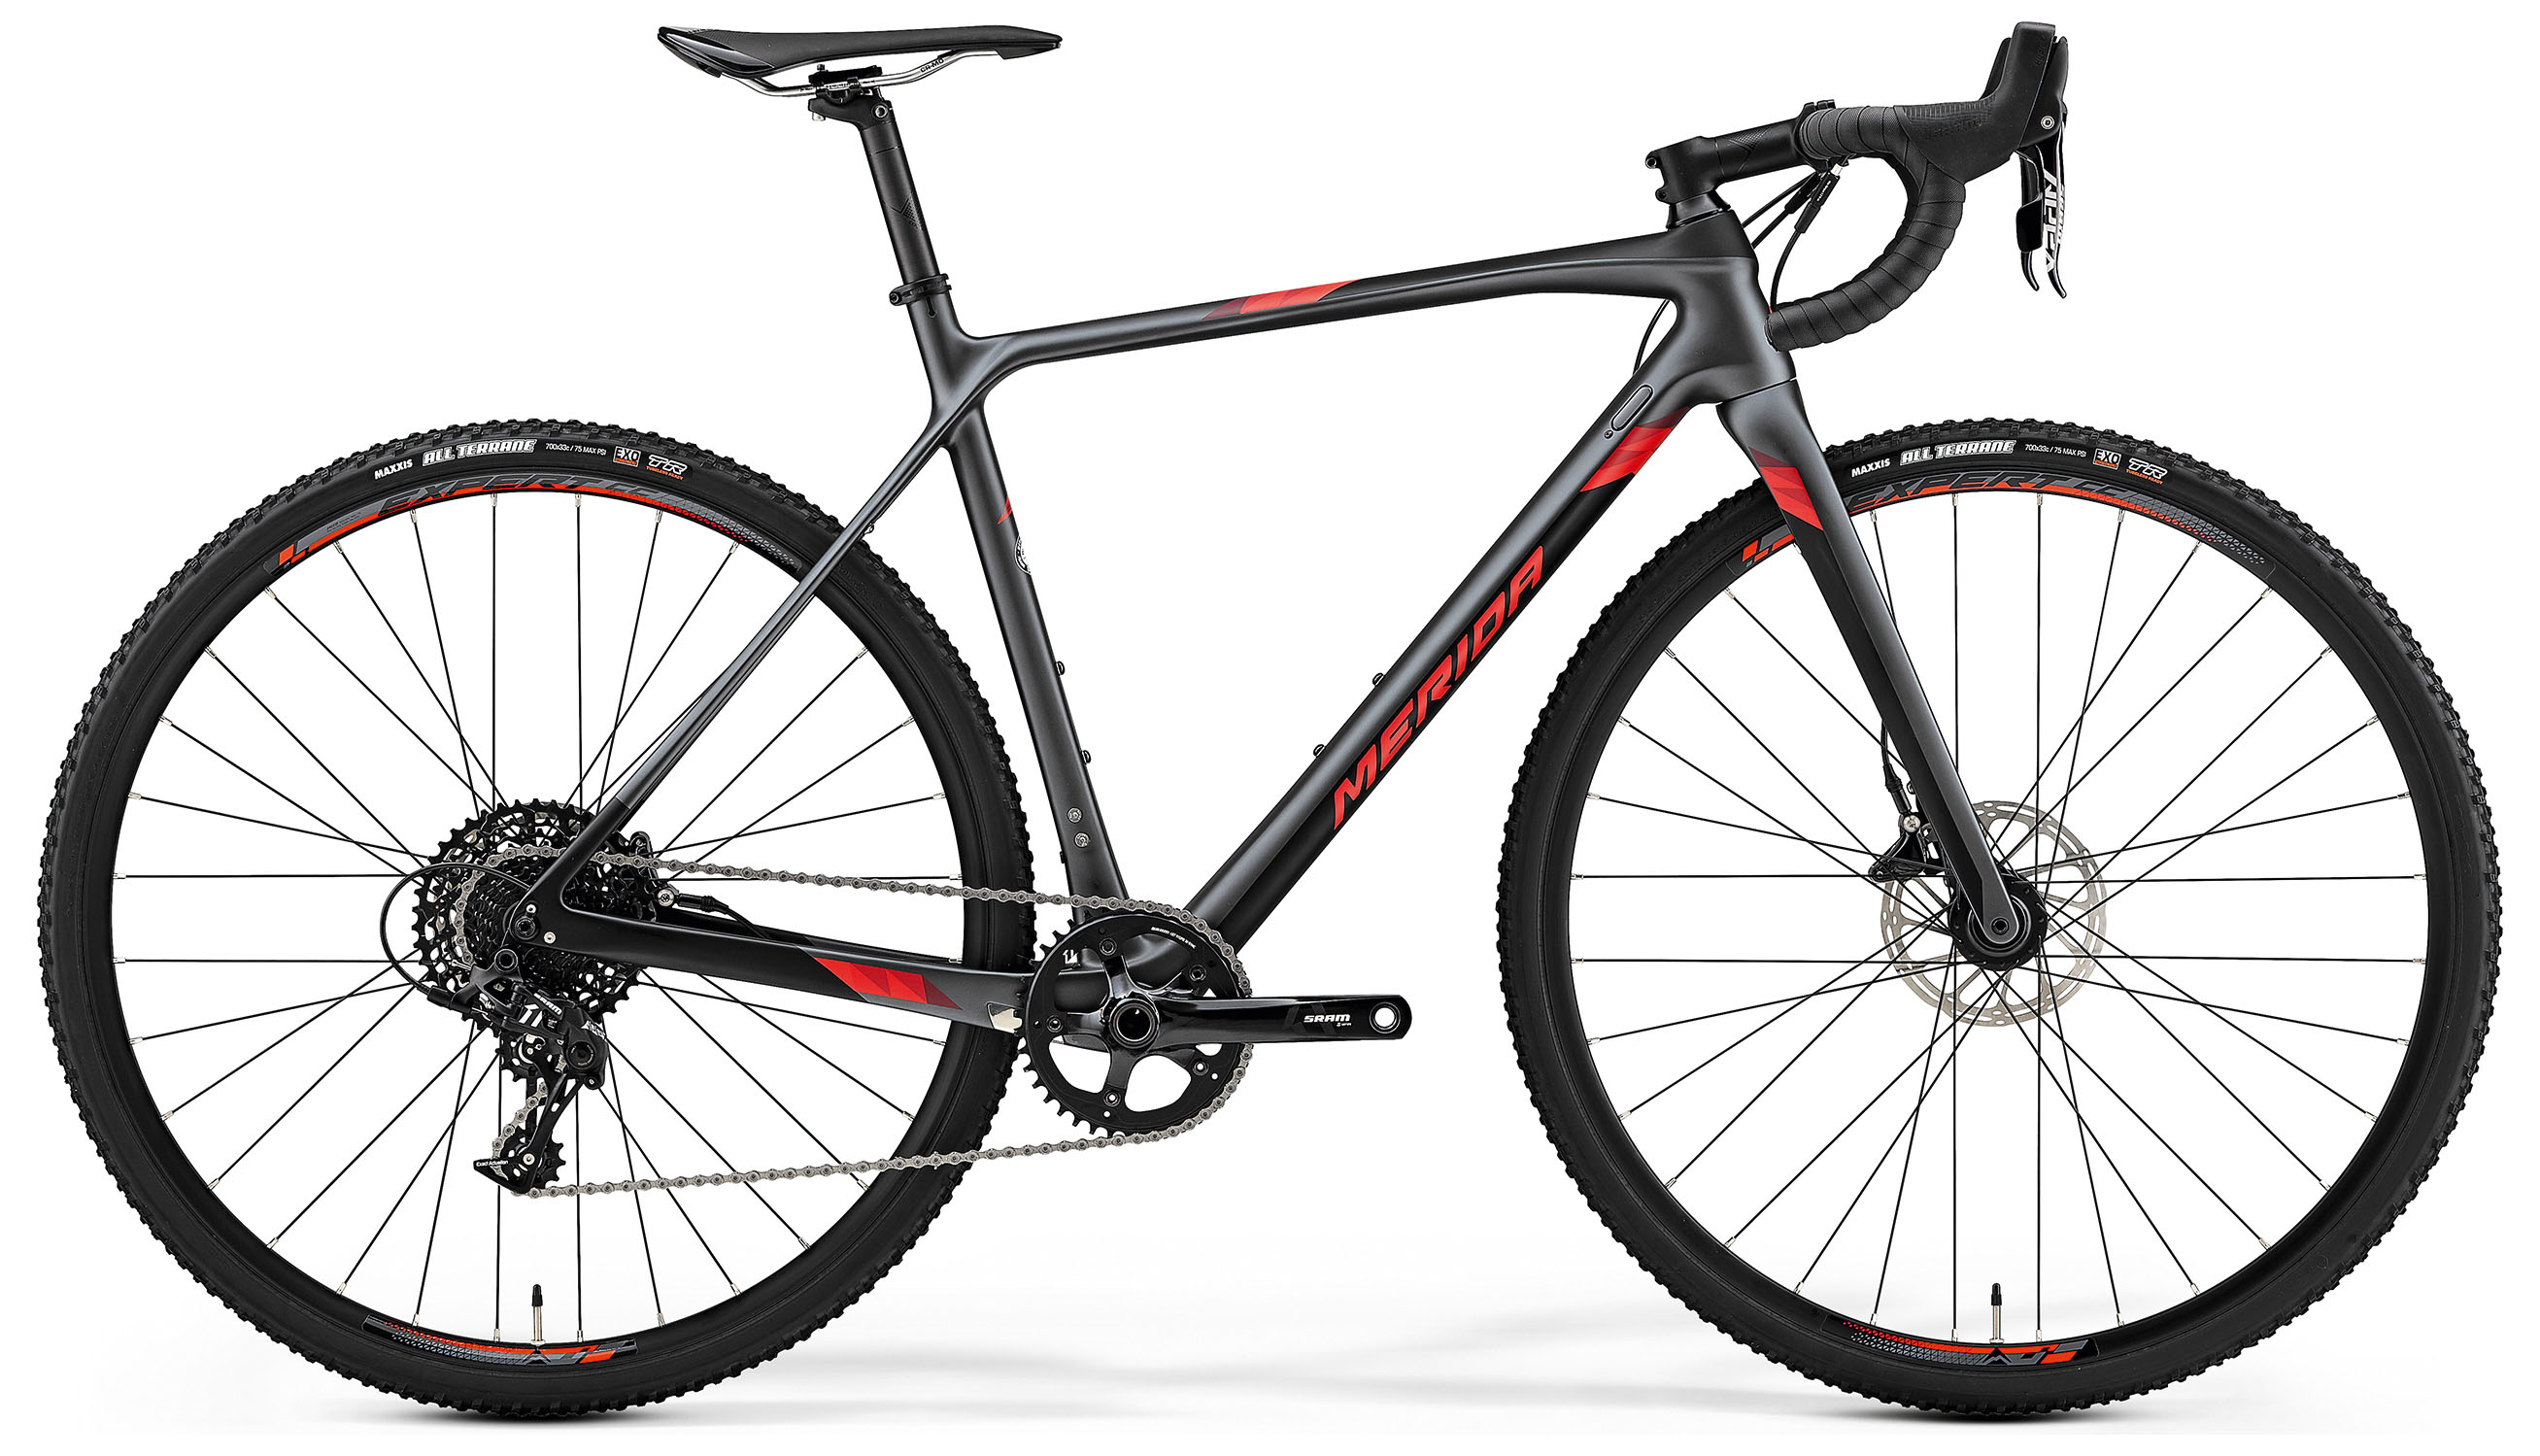  Отзывы о Шоссейном велосипеде Merida Mission CX5000 2019